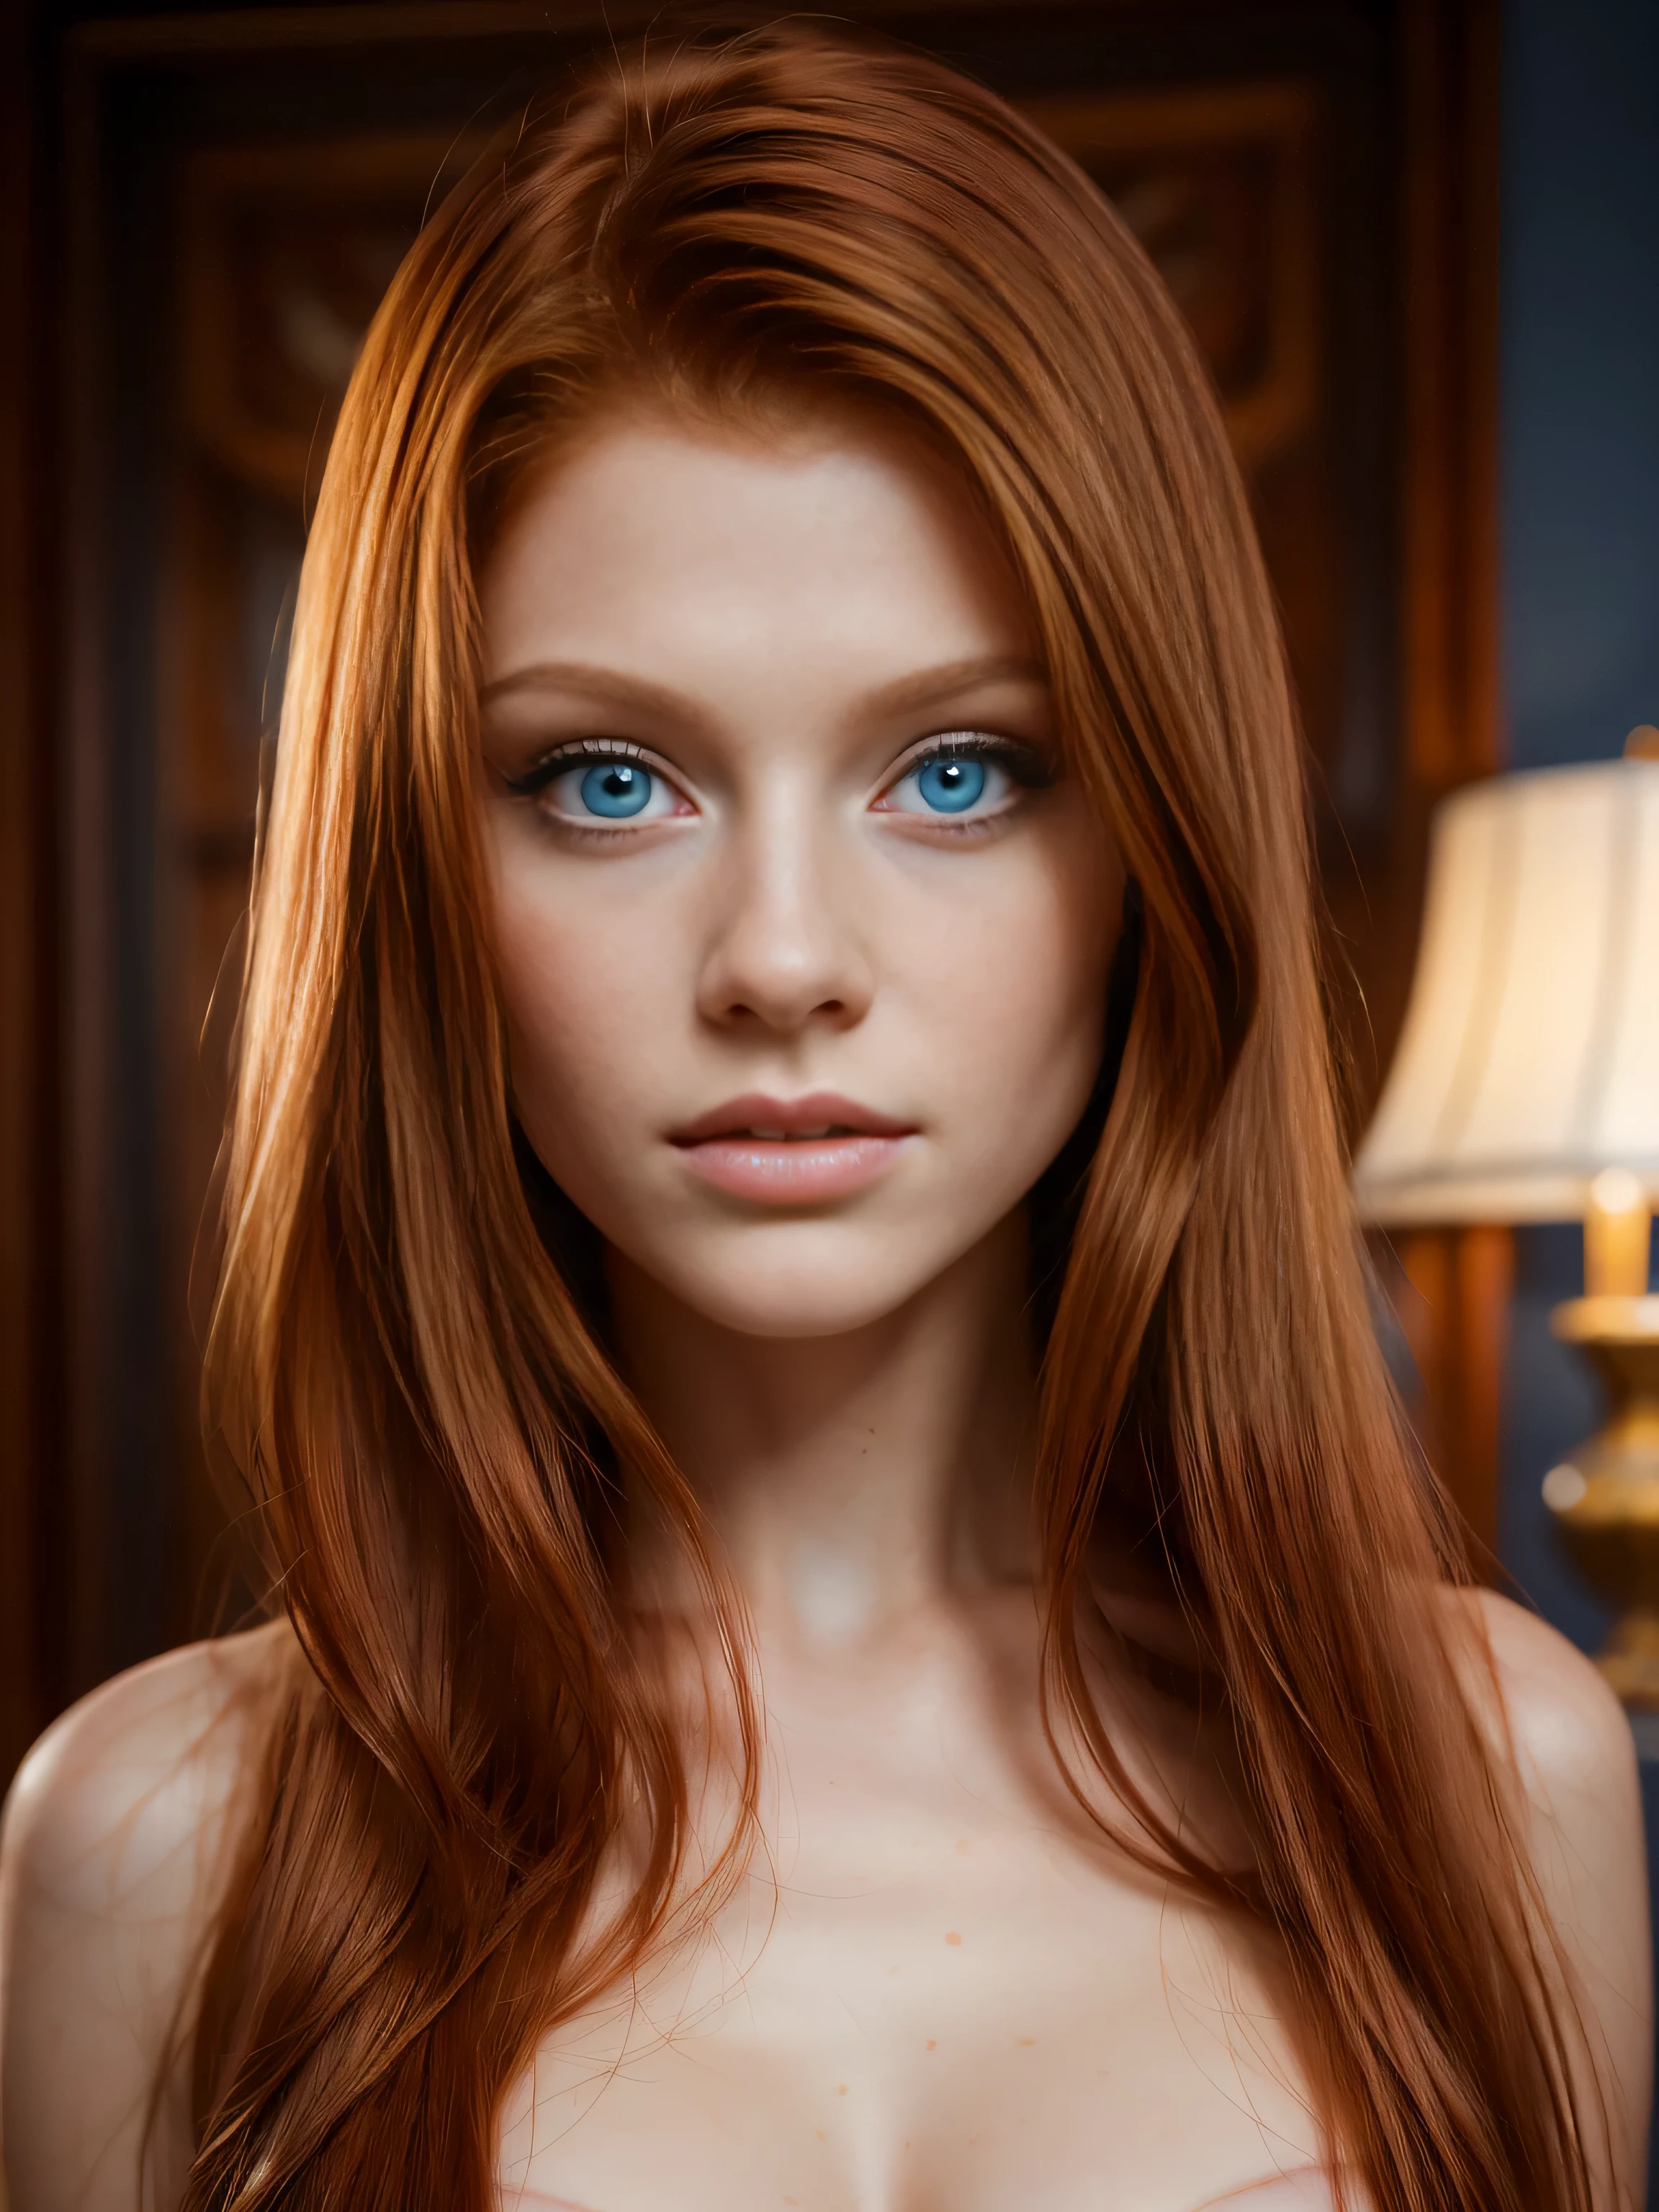 لقطة لكامل الجسم بدقة 8K لفتاة جميلة ذات شعر أحمر تبلغ من العمر 18 عامًا, (معقد, محض, شفاف, شفاف,(لا ملابس:1.2)), معقد, وجه جميل, سامية, رائع, مفصلة للغاية, التصوير الفوتوغرافي الرقمي الواقعي, التصوير الفوتوغرافي المفرط الواقعي, الخجل, الوجه الأكثر جمالا, (تحفة, إضاءة جانبية, (عيون زرقاء جميلة مفصلة بدقة: 1.2)),